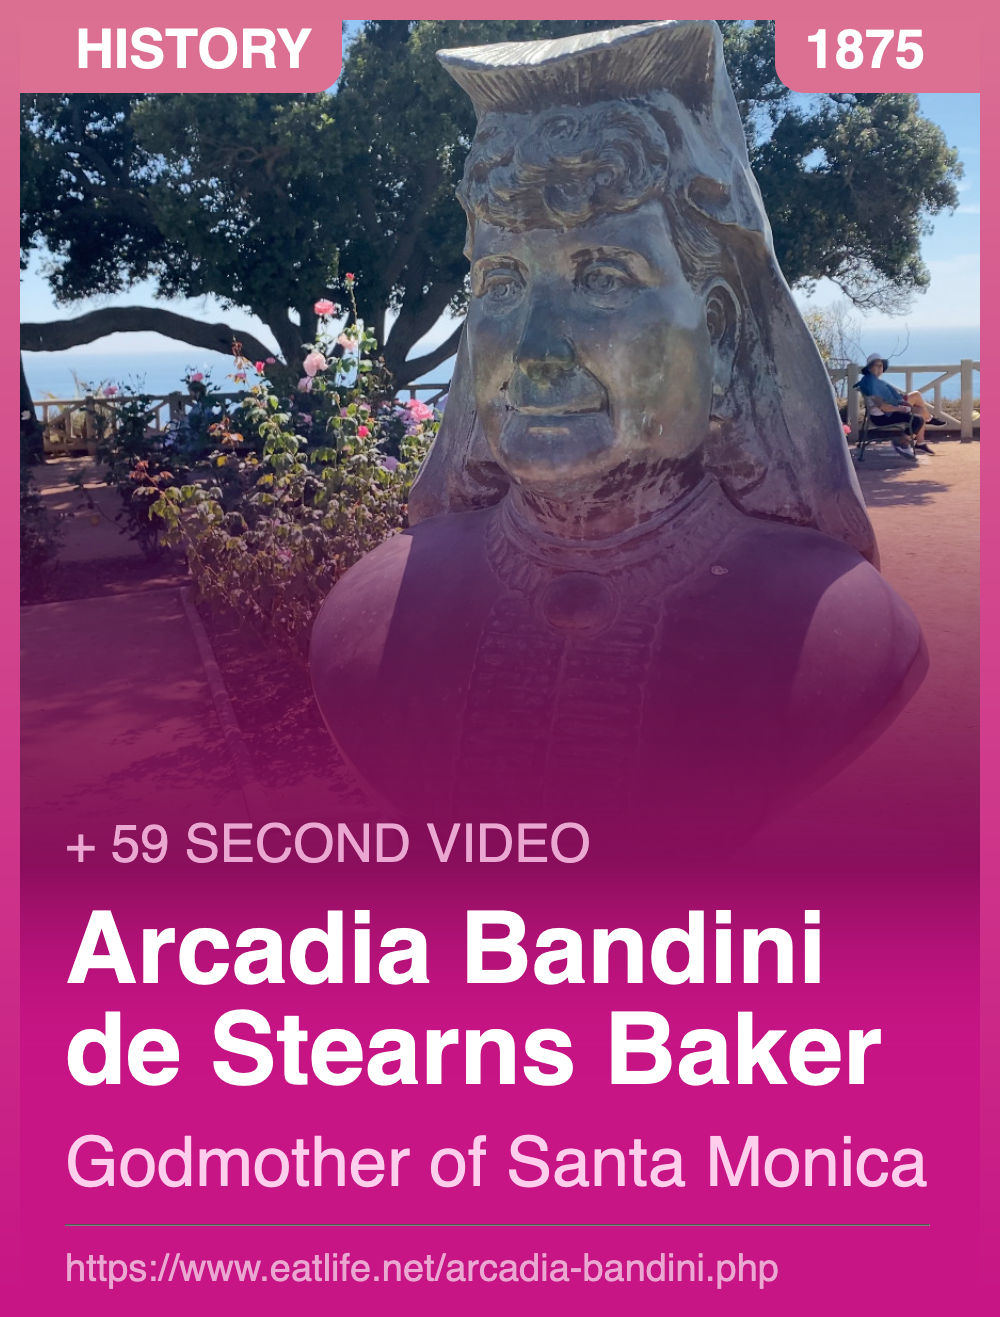 Arcadia Bandini de Stearns Baker